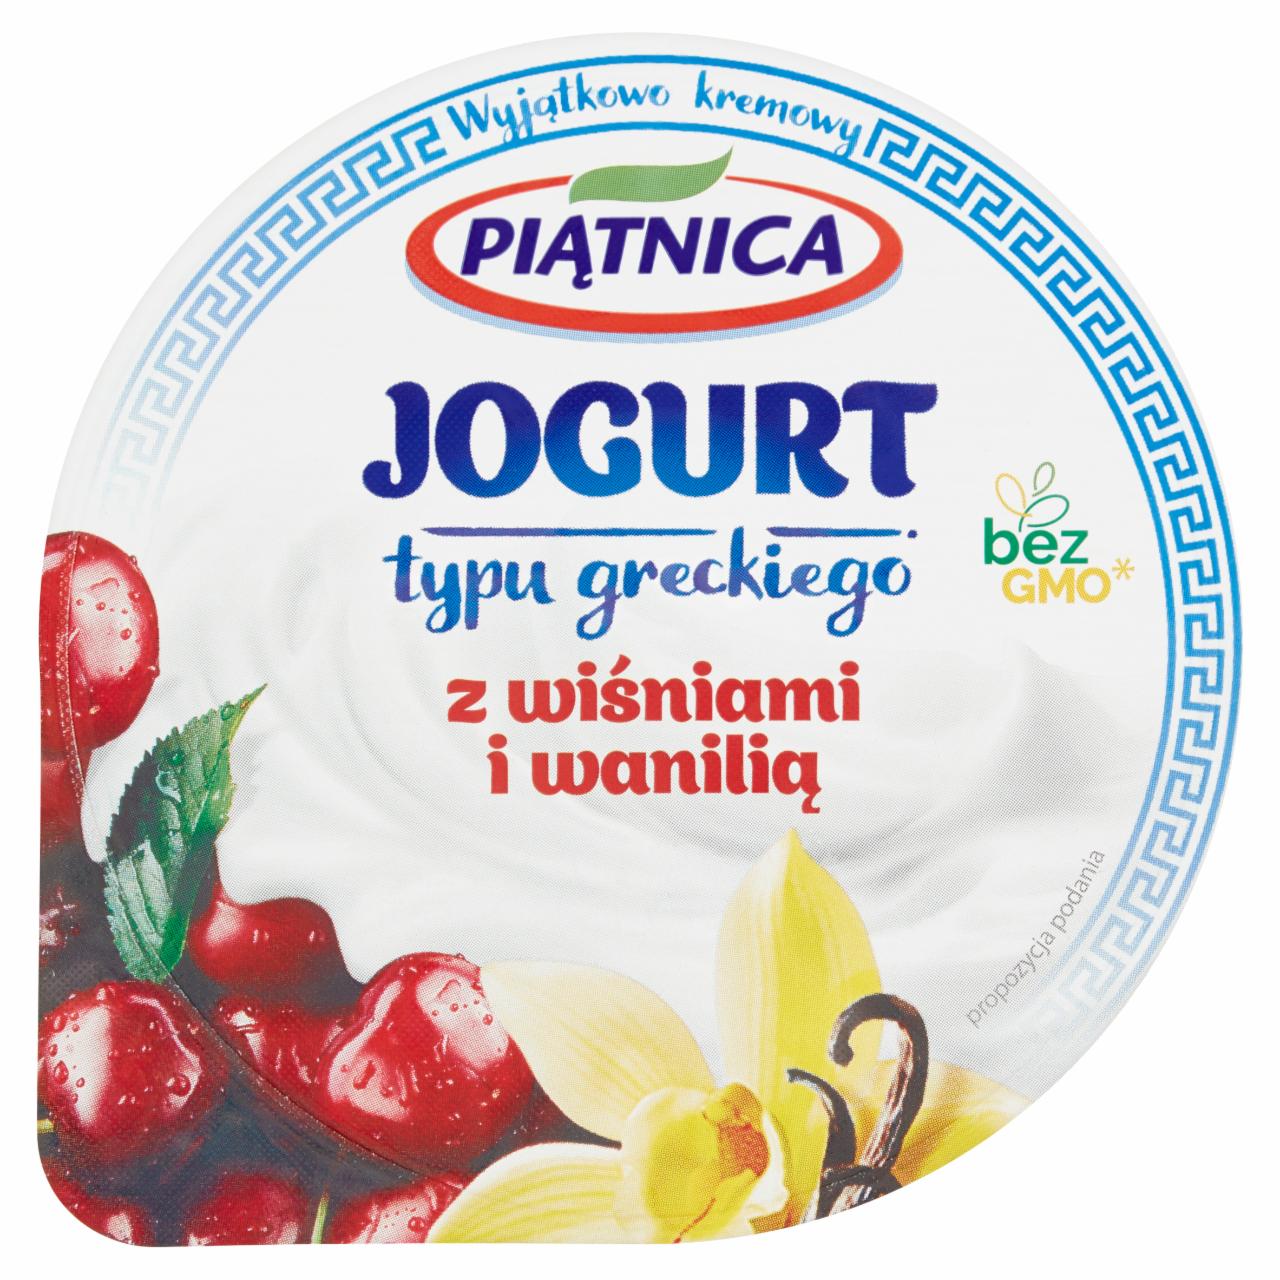 Zdjęcia - Piątnica Jogurt typu greckiego z wiśniami i wanilią 150 g